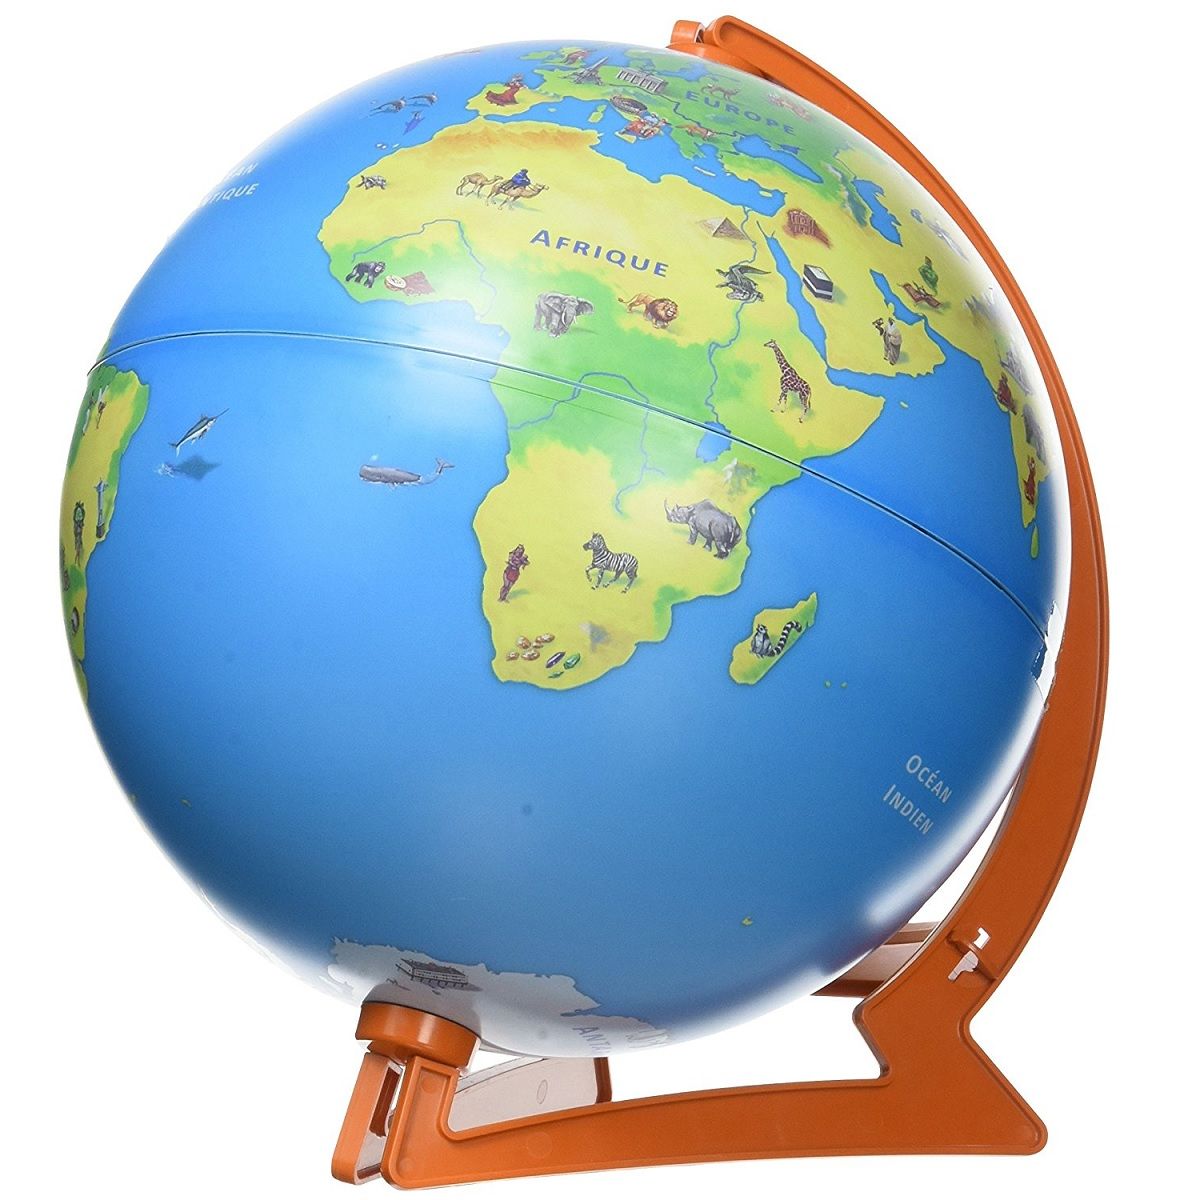 Globe Interactif Mon Premier Globe